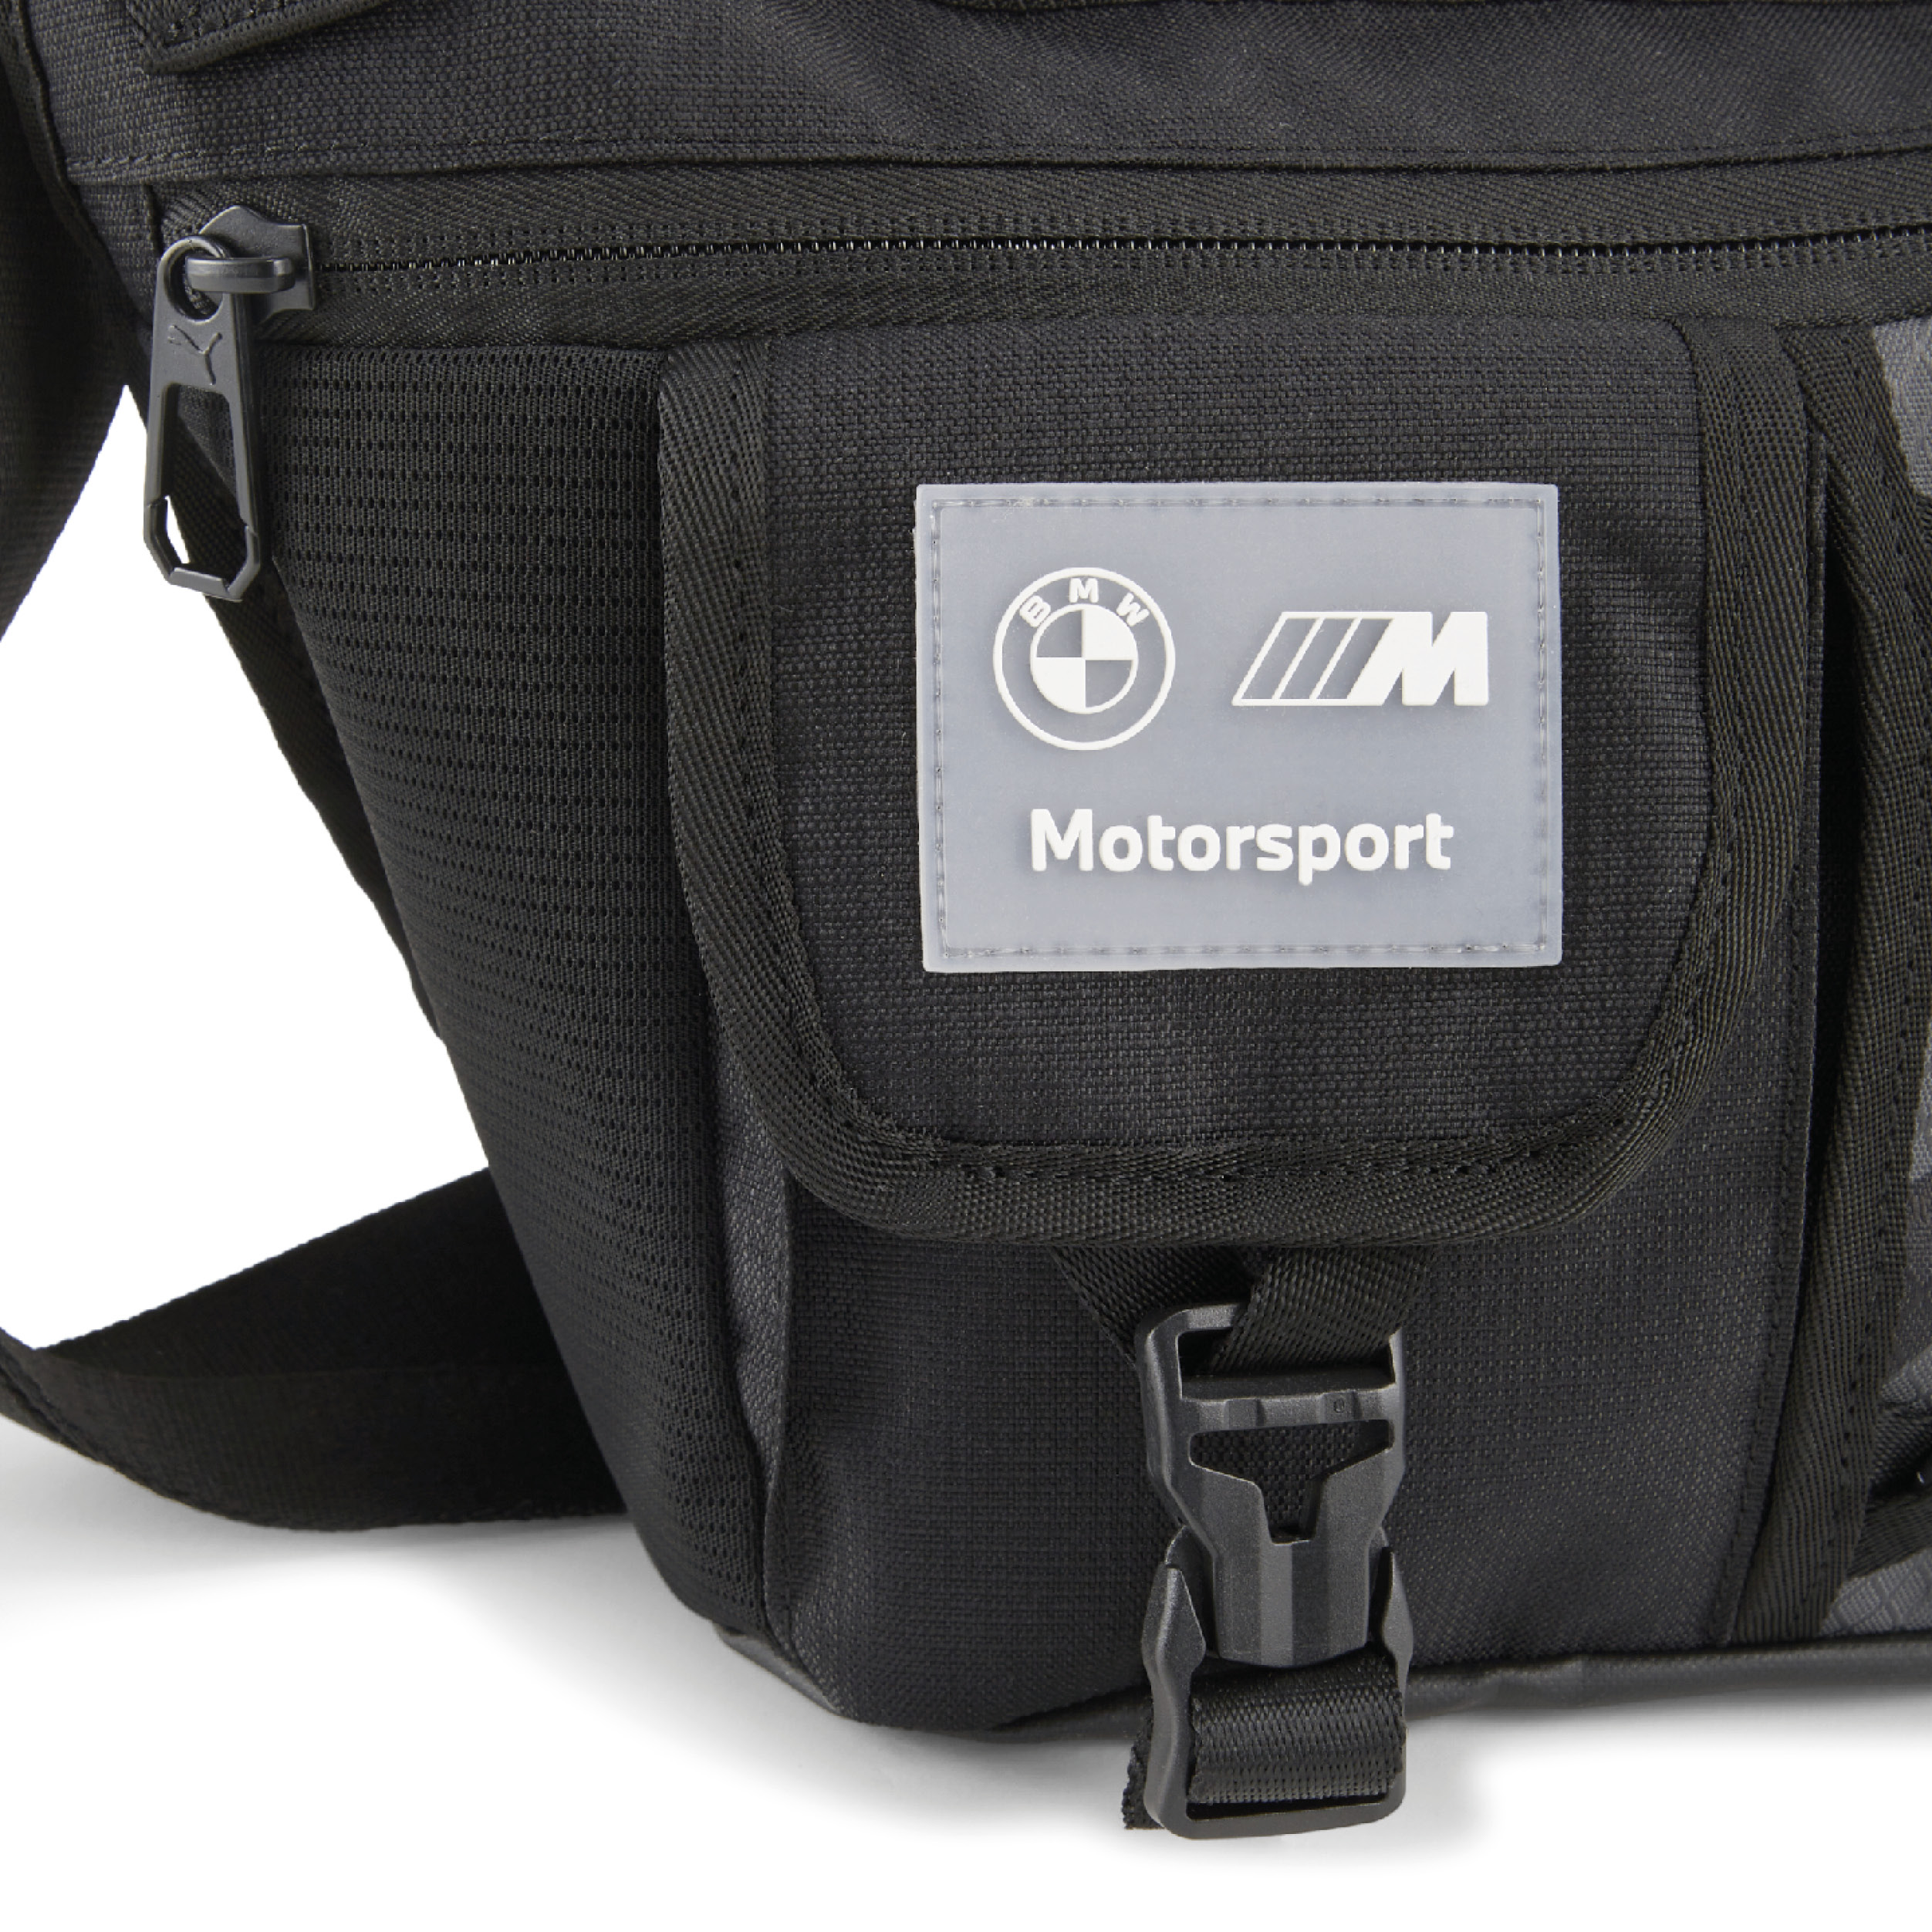 BMW M Motorsport Messenger Bag